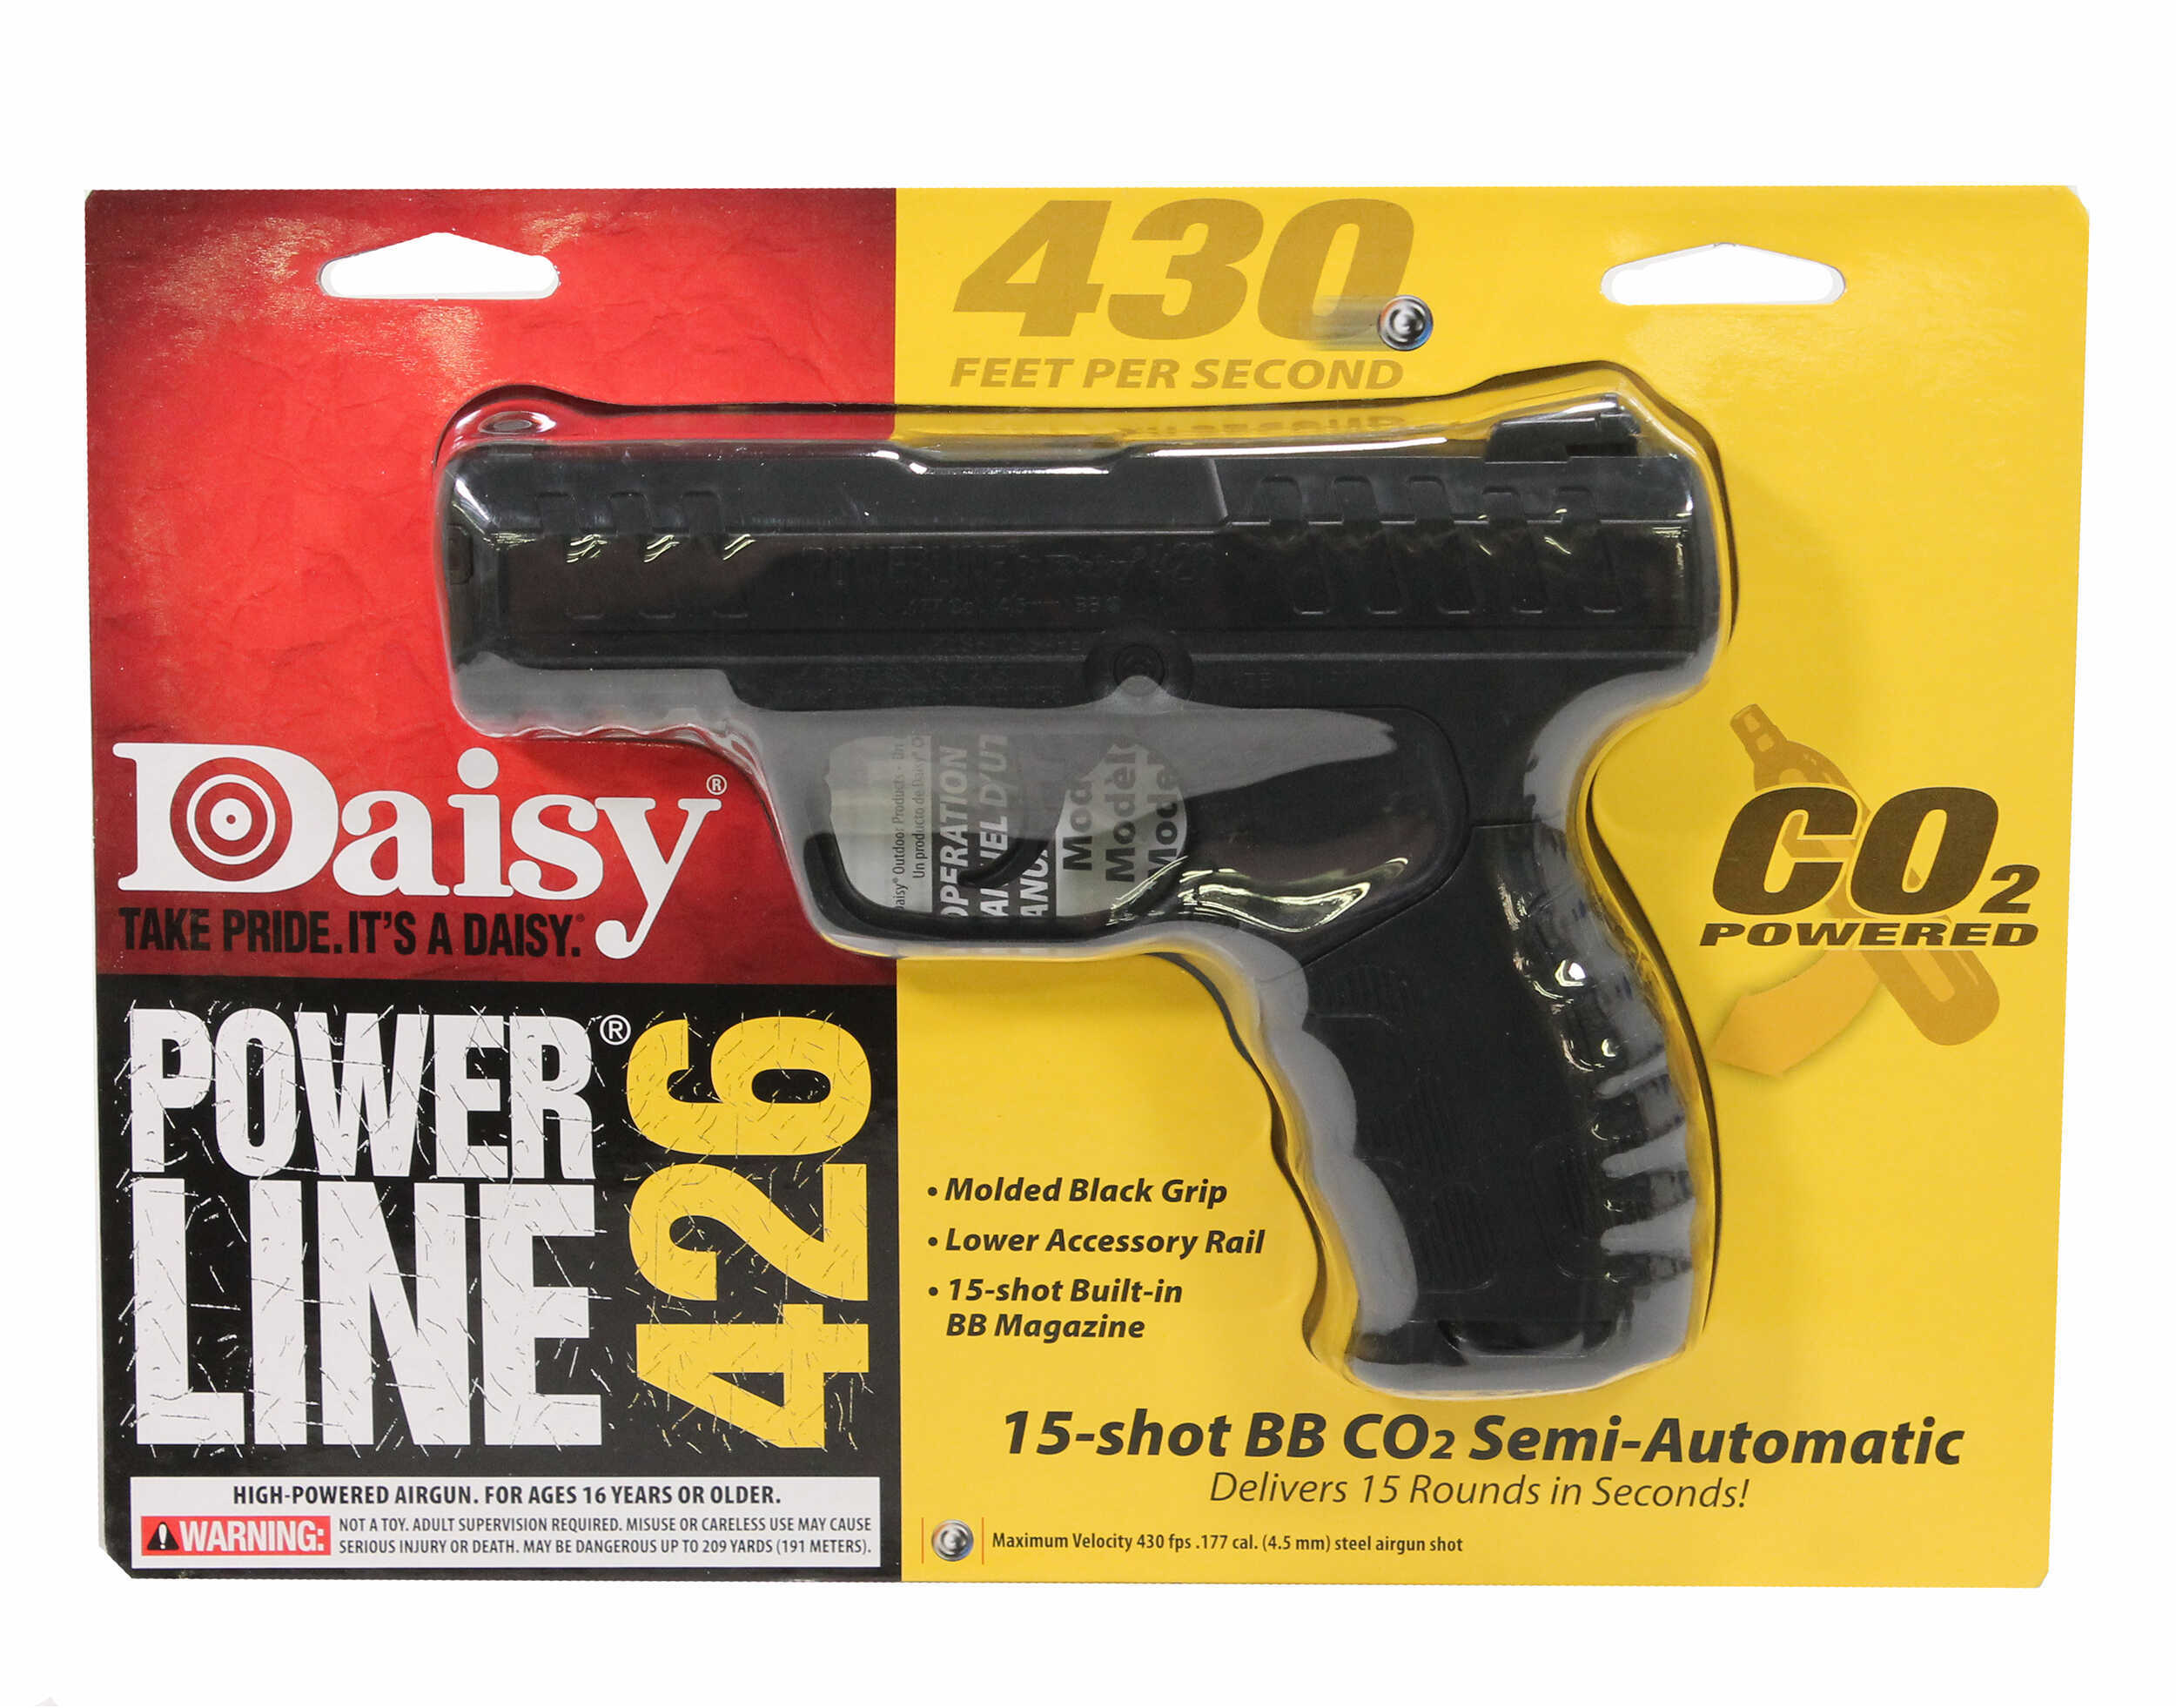 Daisy Model 426 Co2 Air Pistol .177 BB'S 8-Shot